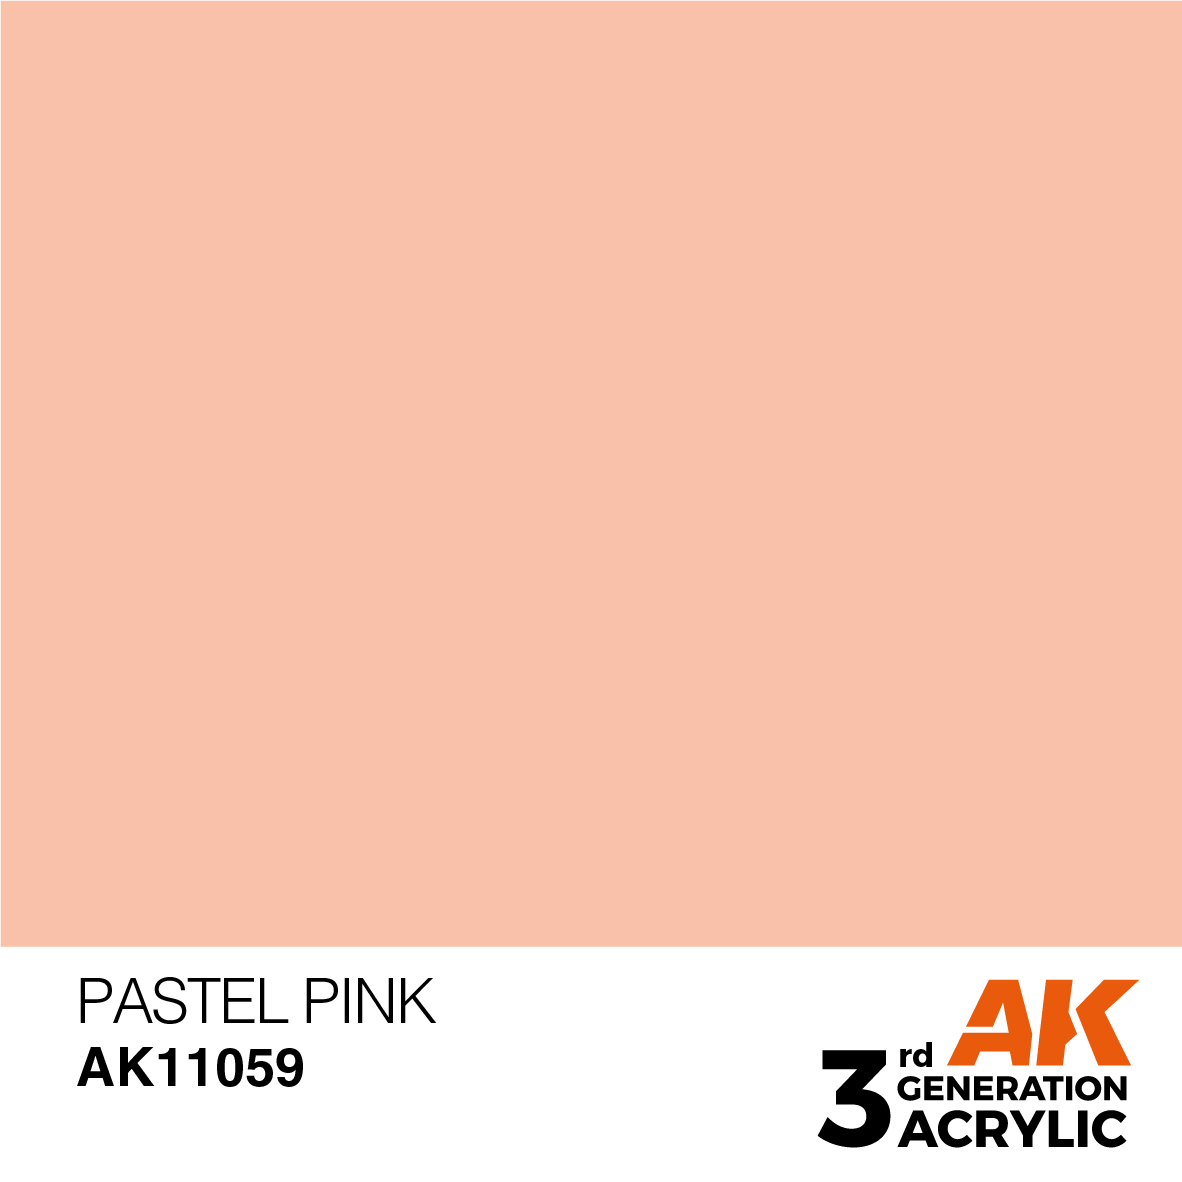 AK11059 Pastel Pink (3rd-Generation) (17mL)